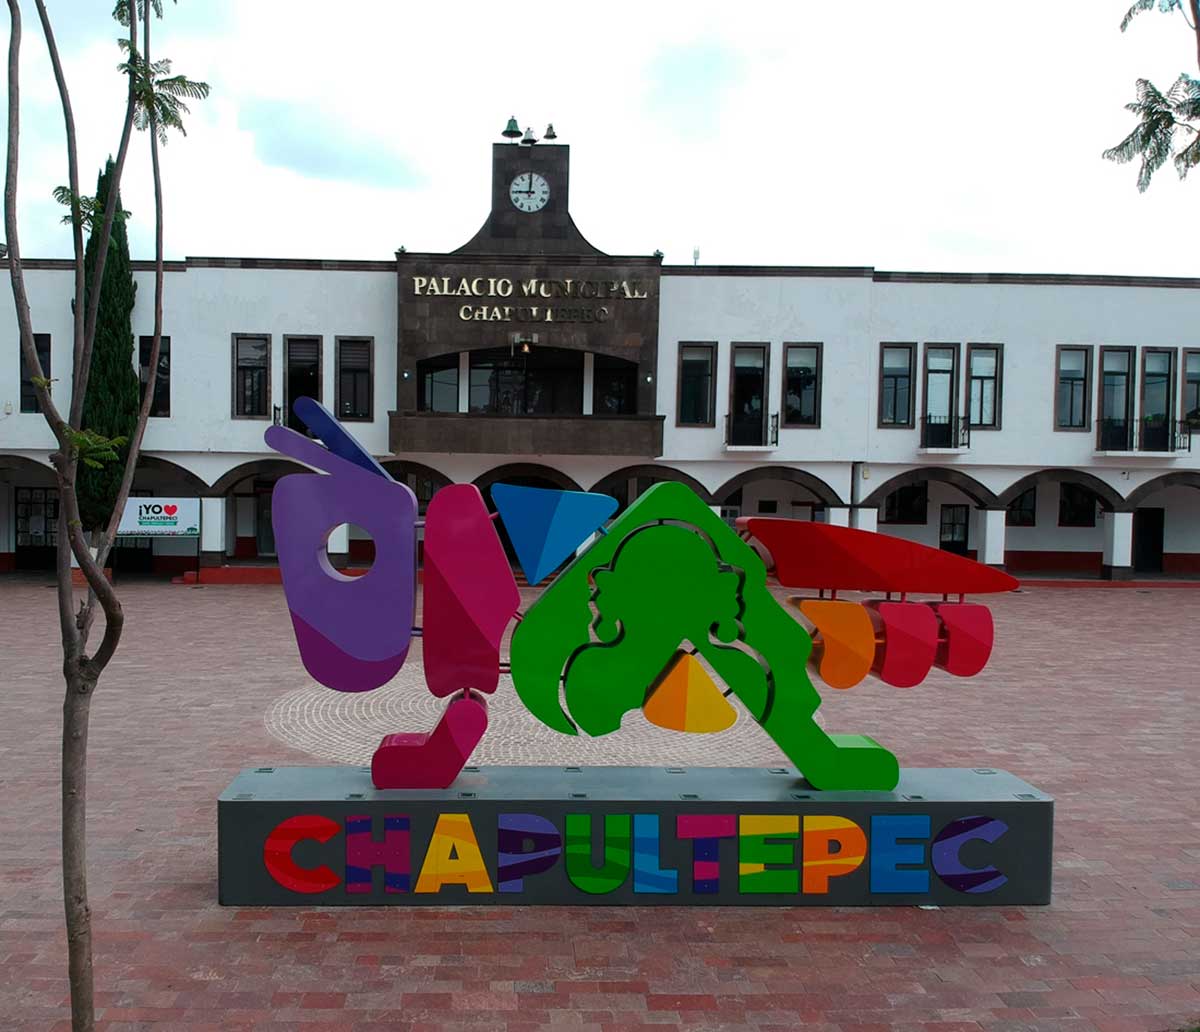 Tiene municipio de Chapultepec riqueza cultural, natural e histórica